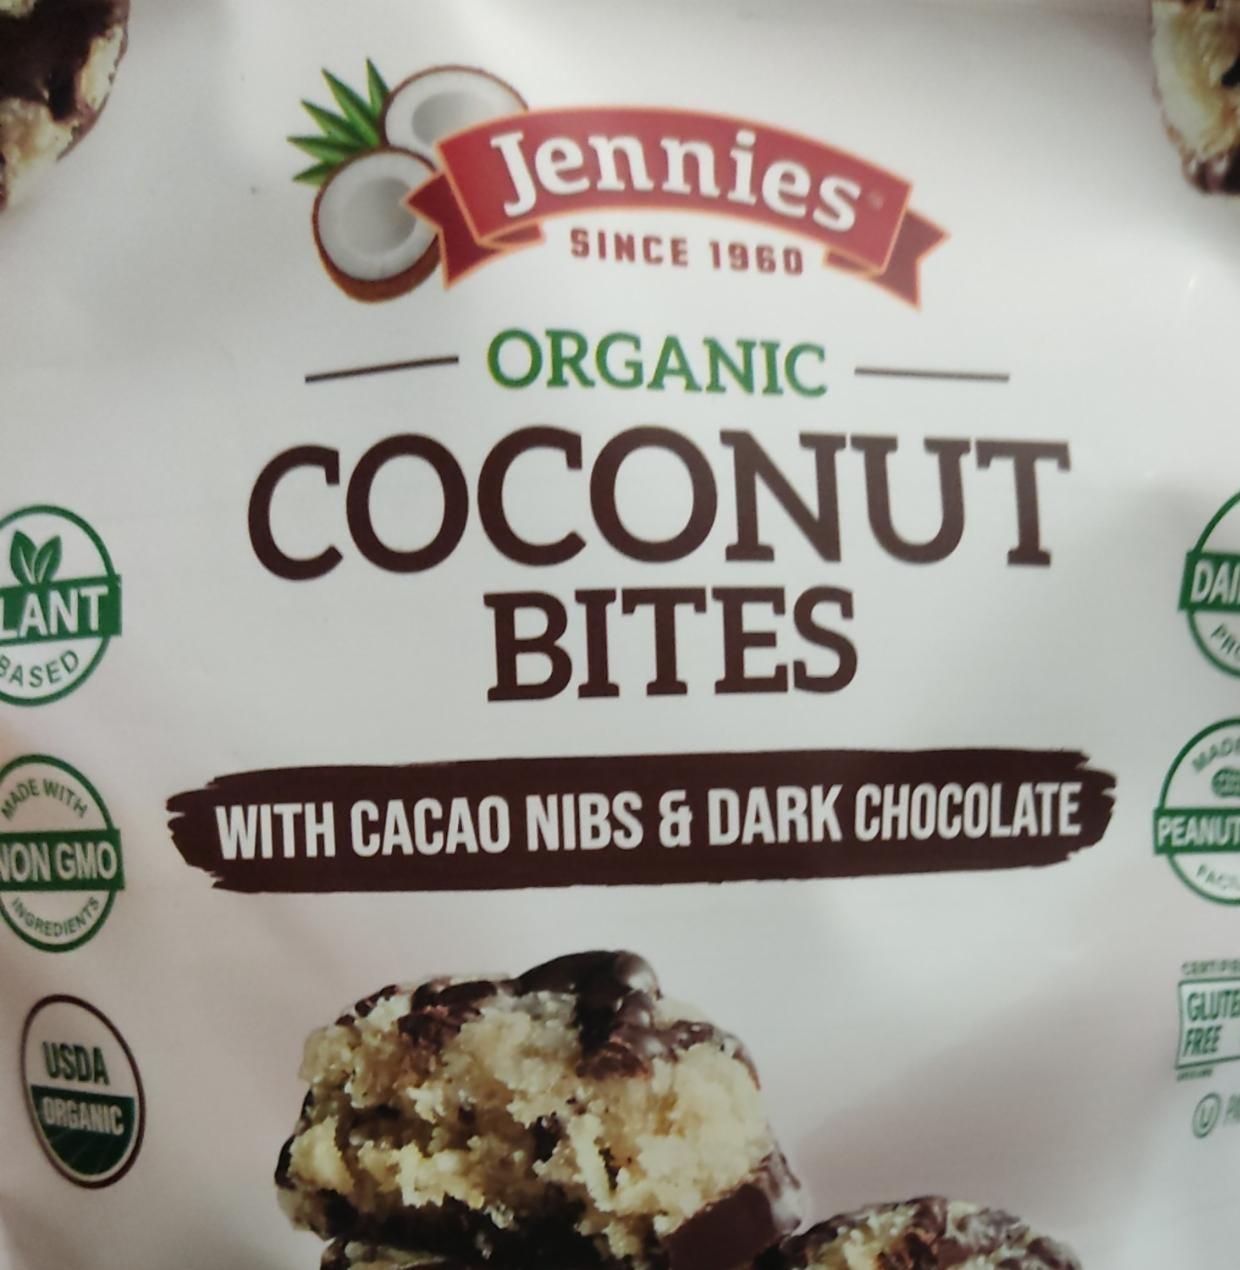 Фото - Органічні кокосові цукерки Coconut bites Jennies